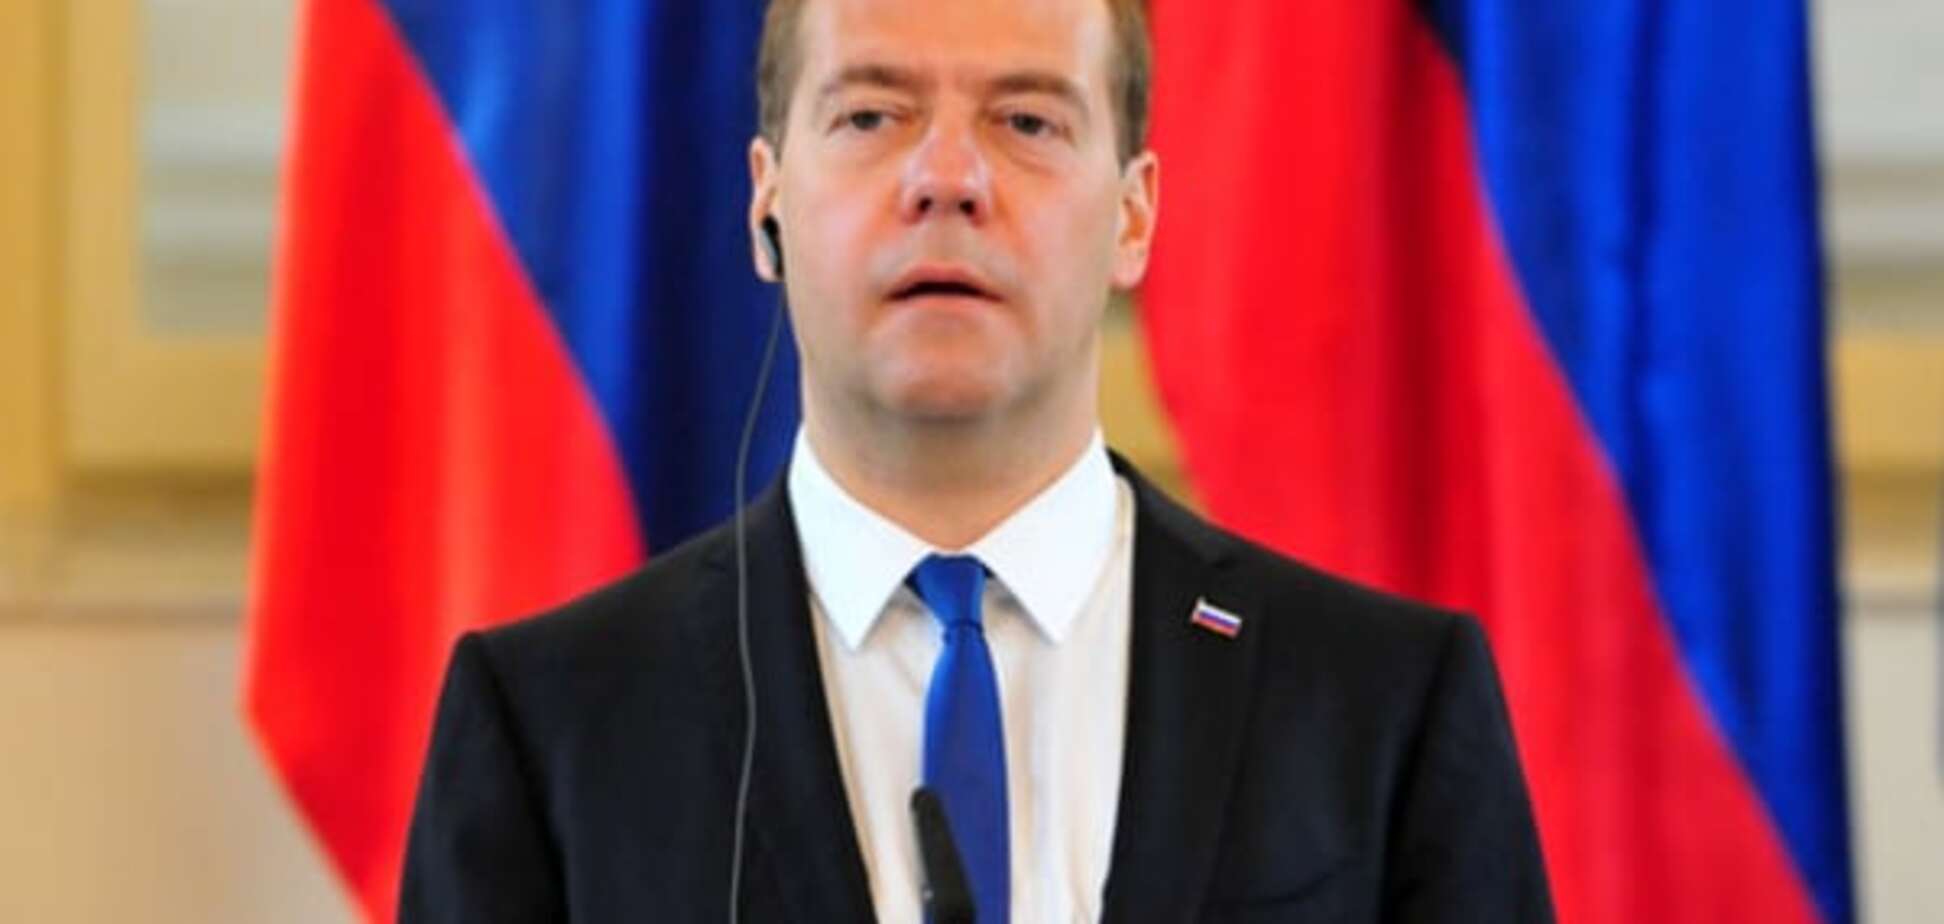 Медведев заявил, что Россия готова сотрудничать с Украиной, если та захочет